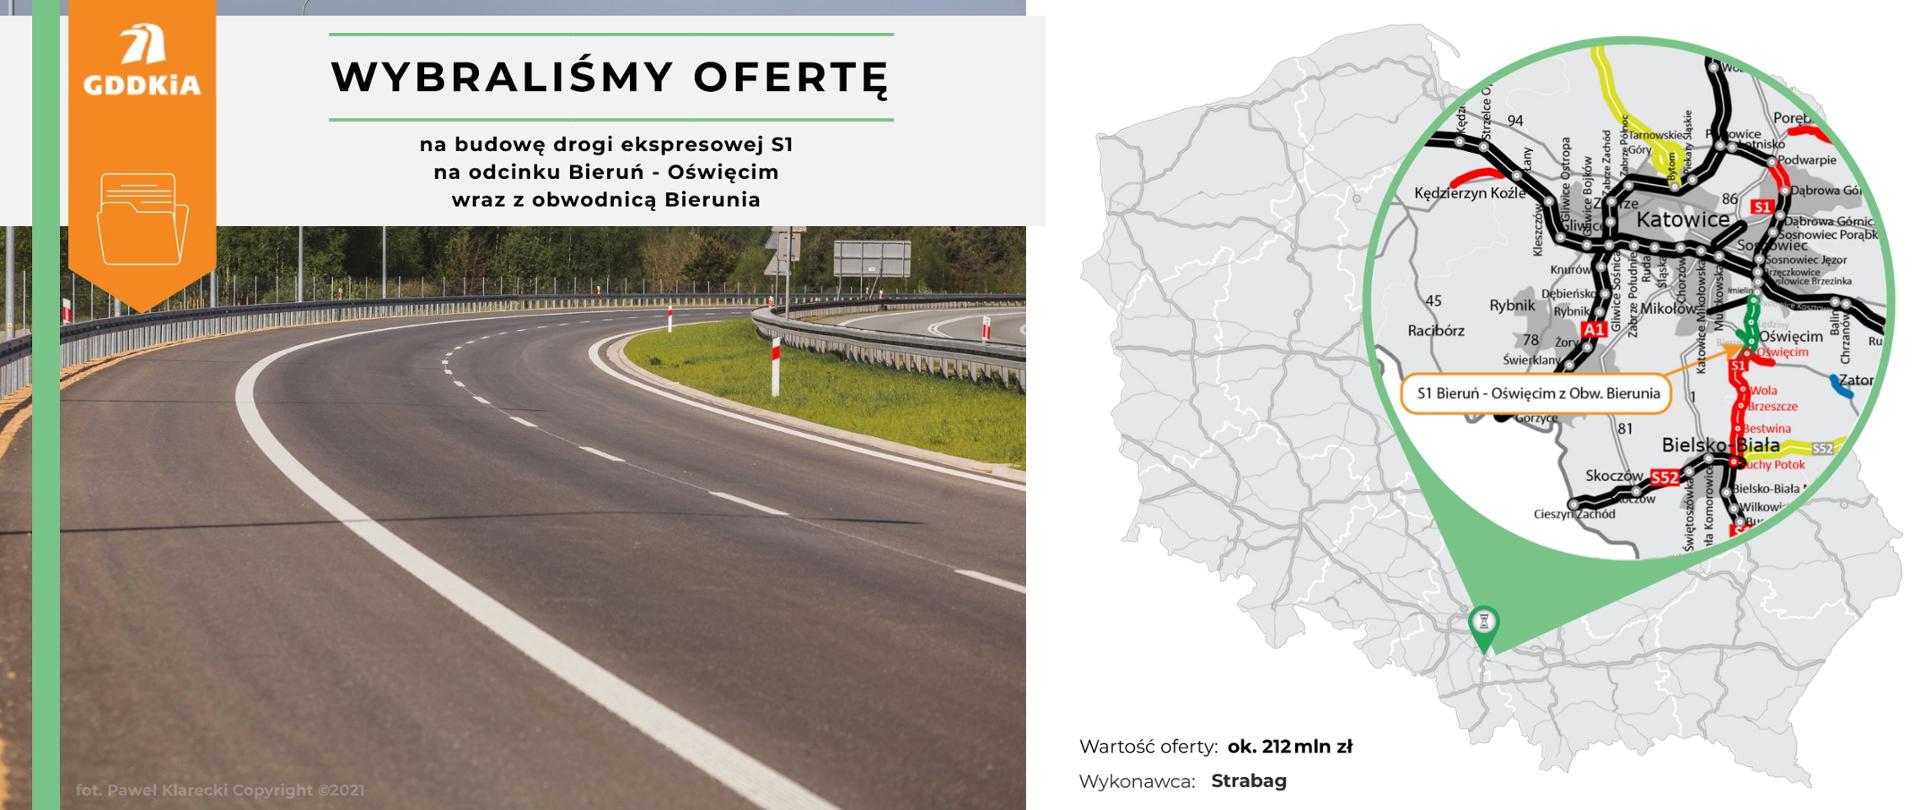 Infografika informująca o wybraniu najkorzystniejszej oferty dla budowy drogi ekspresowej S1 na odcinku Bieruń - Oświęcim wraz z obwodnicą Bierunia. Po prawej mapa Polski z zaznaczonym odcinkiem. Widoczne pasy ruchu, bariery i zieleń w pasie między jezdniami.